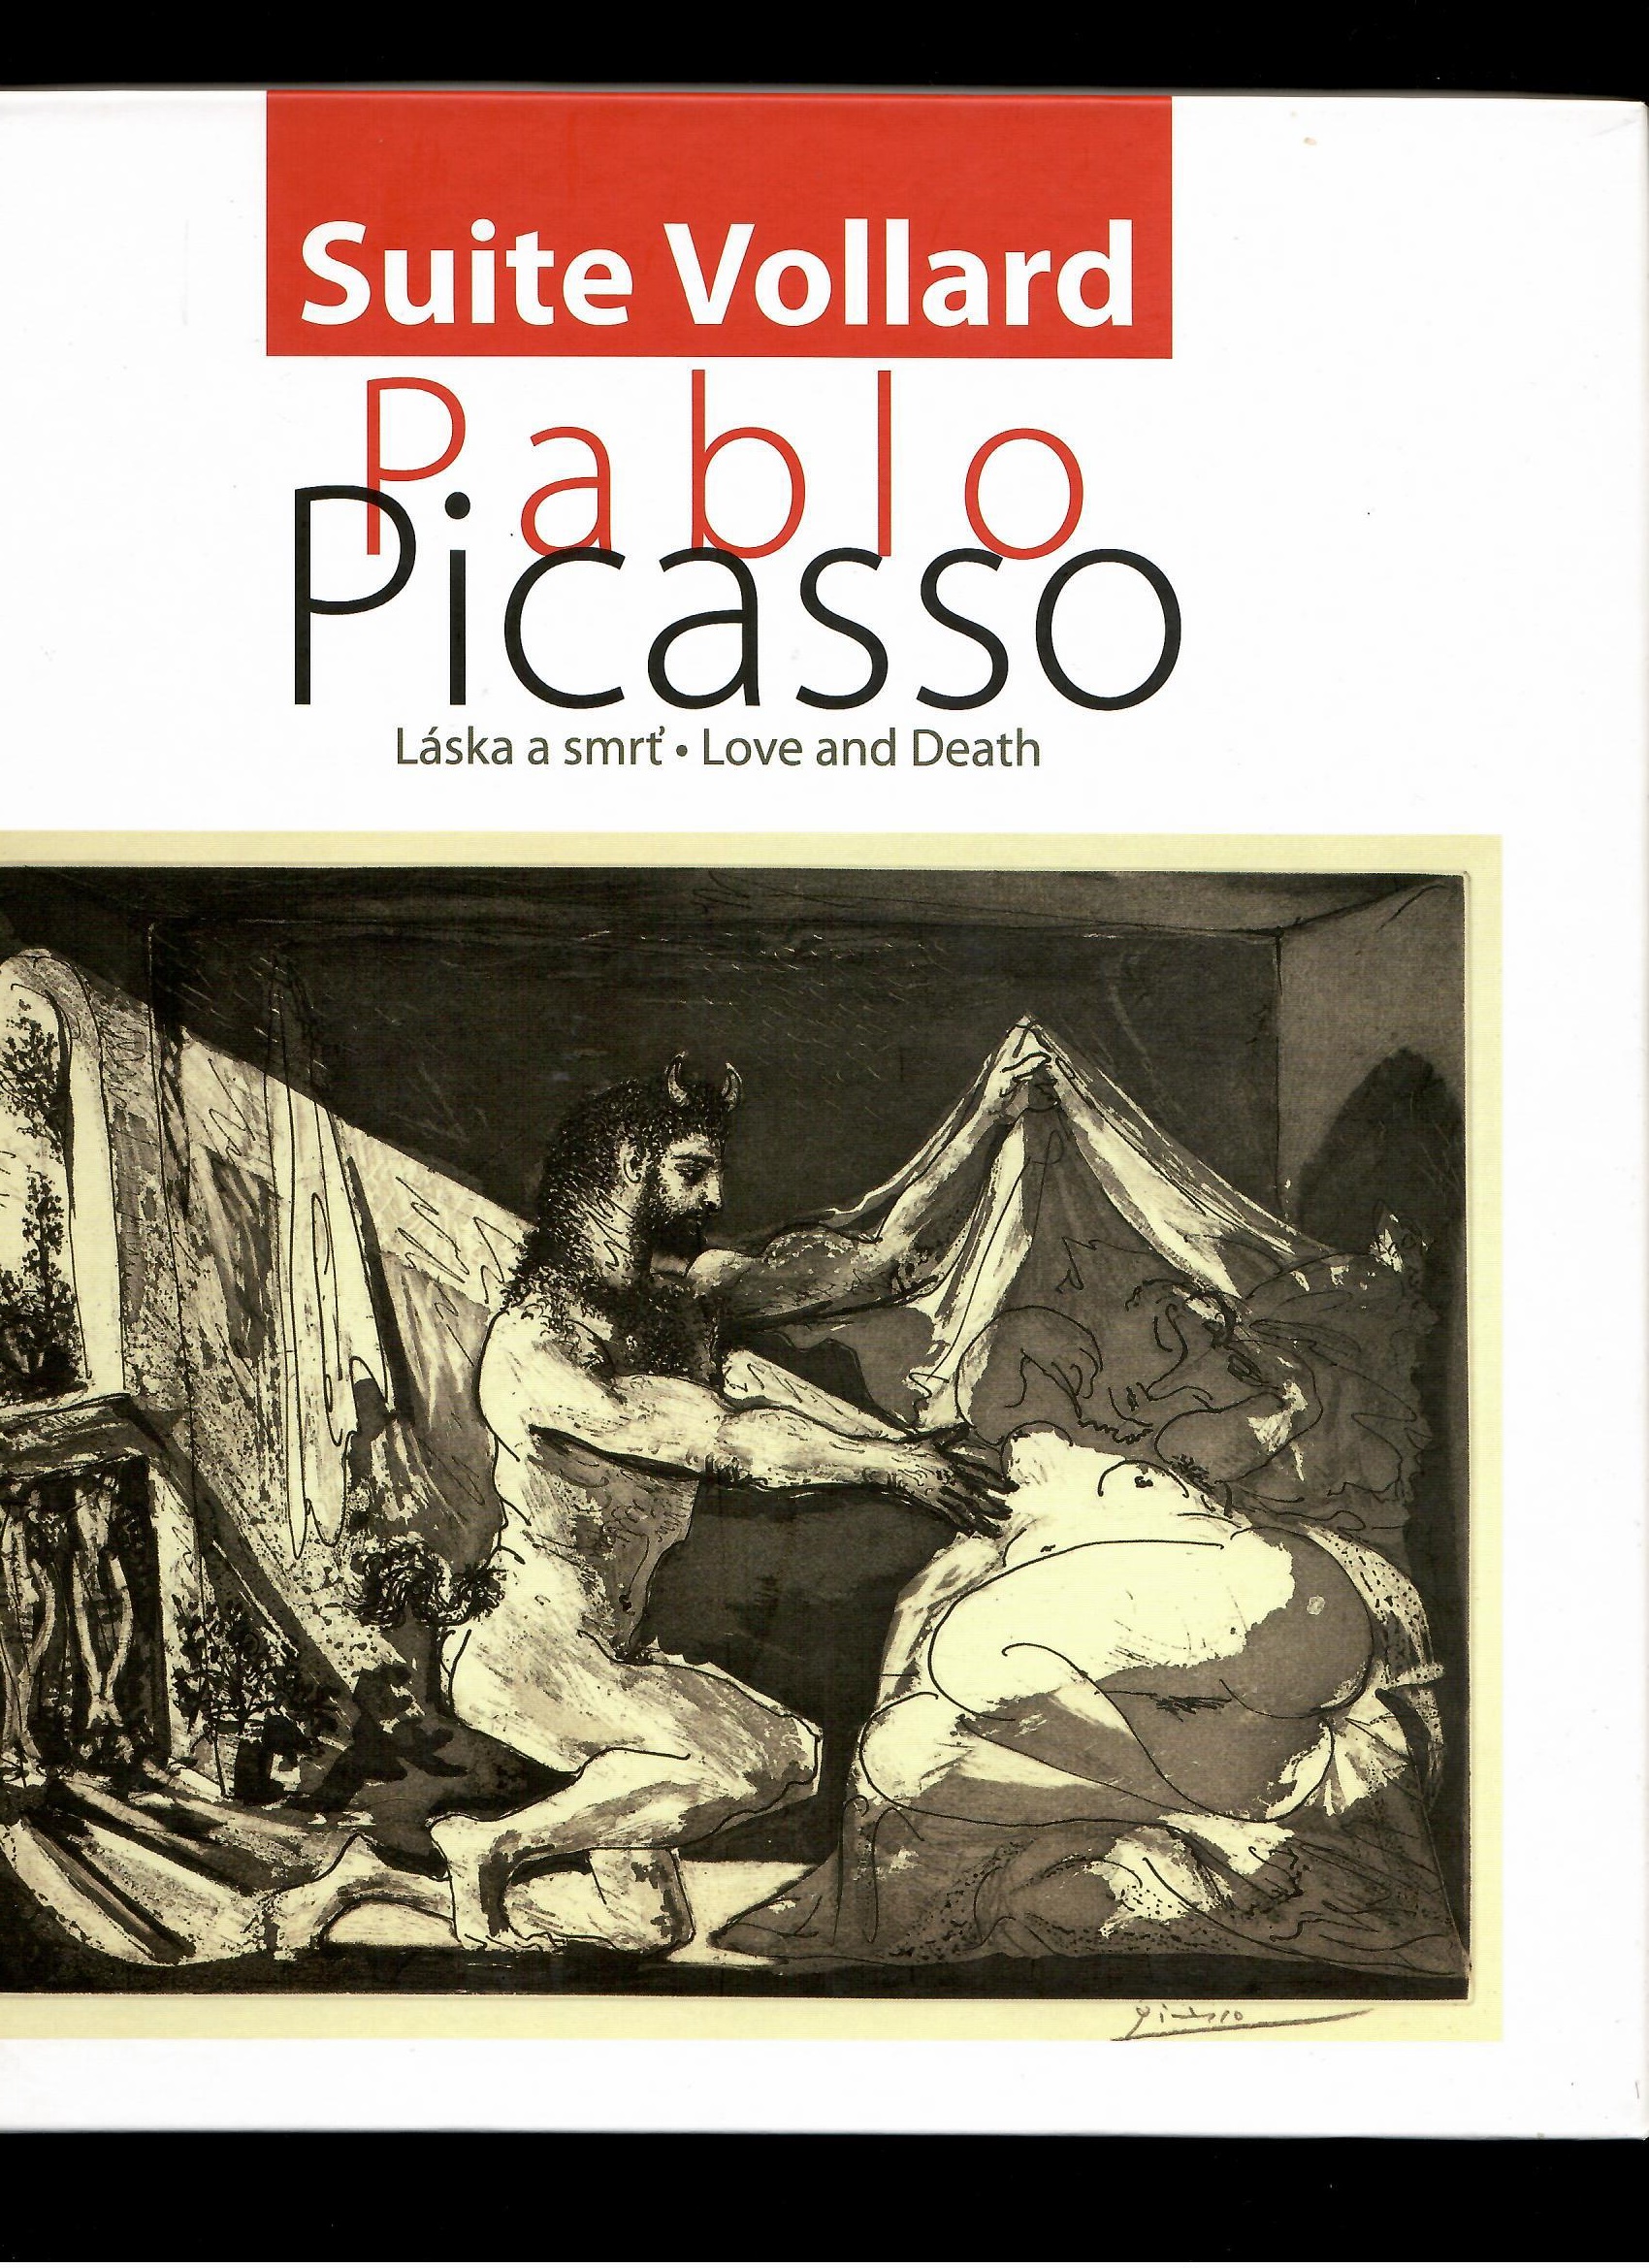 Fernando C. Borrego: Pablo Picasso Láska a smrť